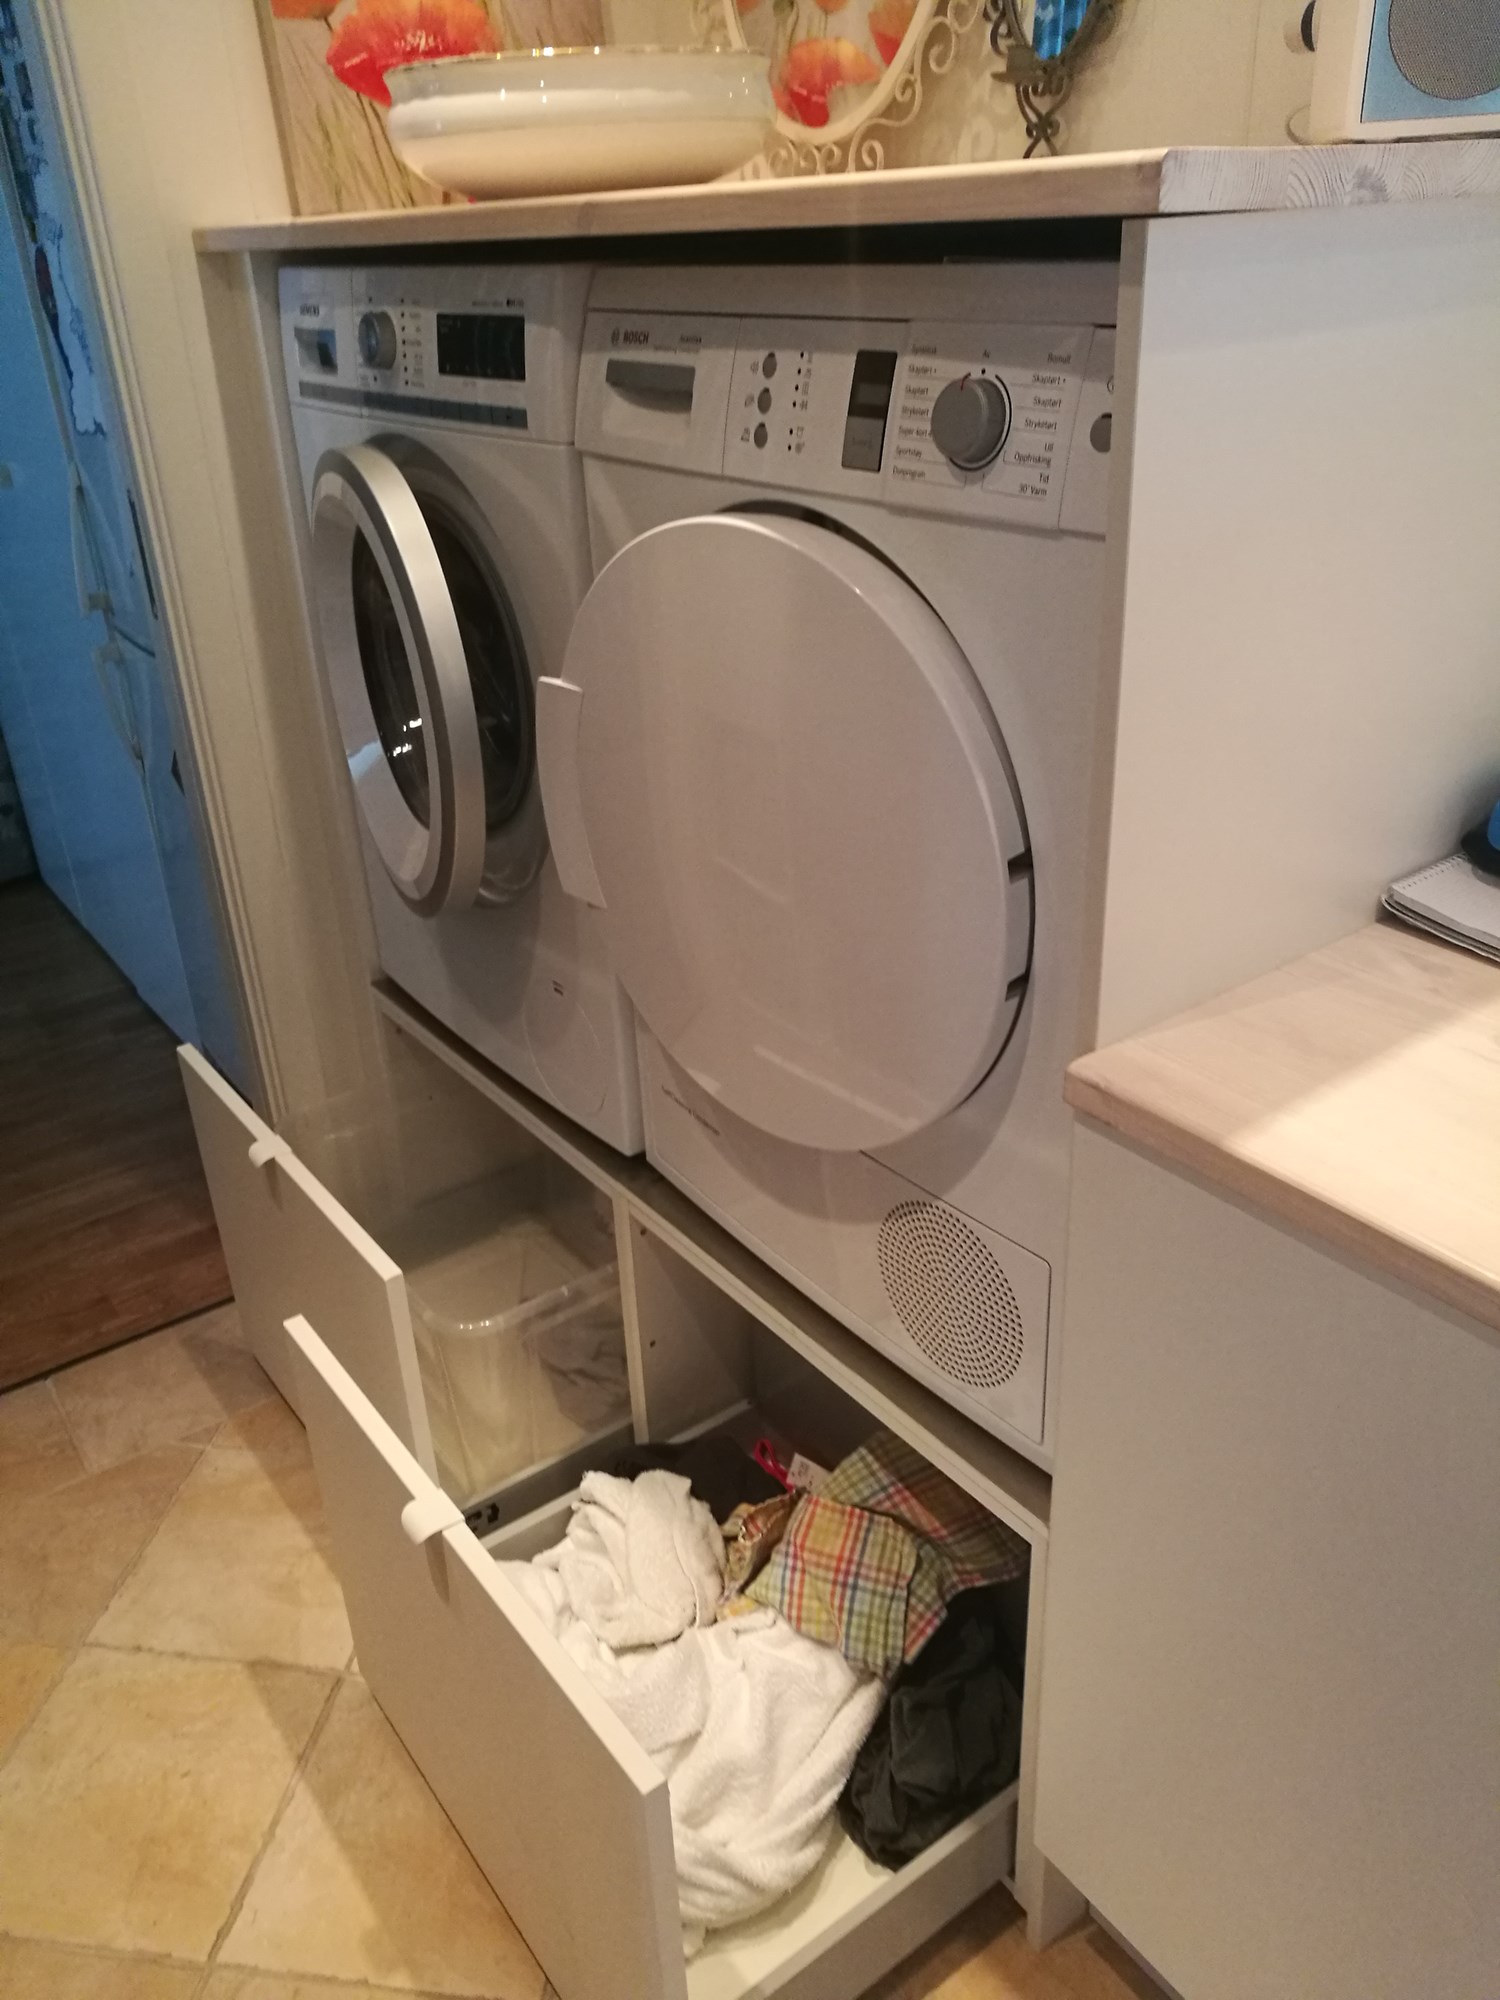 Ikea kjøkkeninnredning på vaskerom? - IMG_20201101_131323.jpg - ludo64